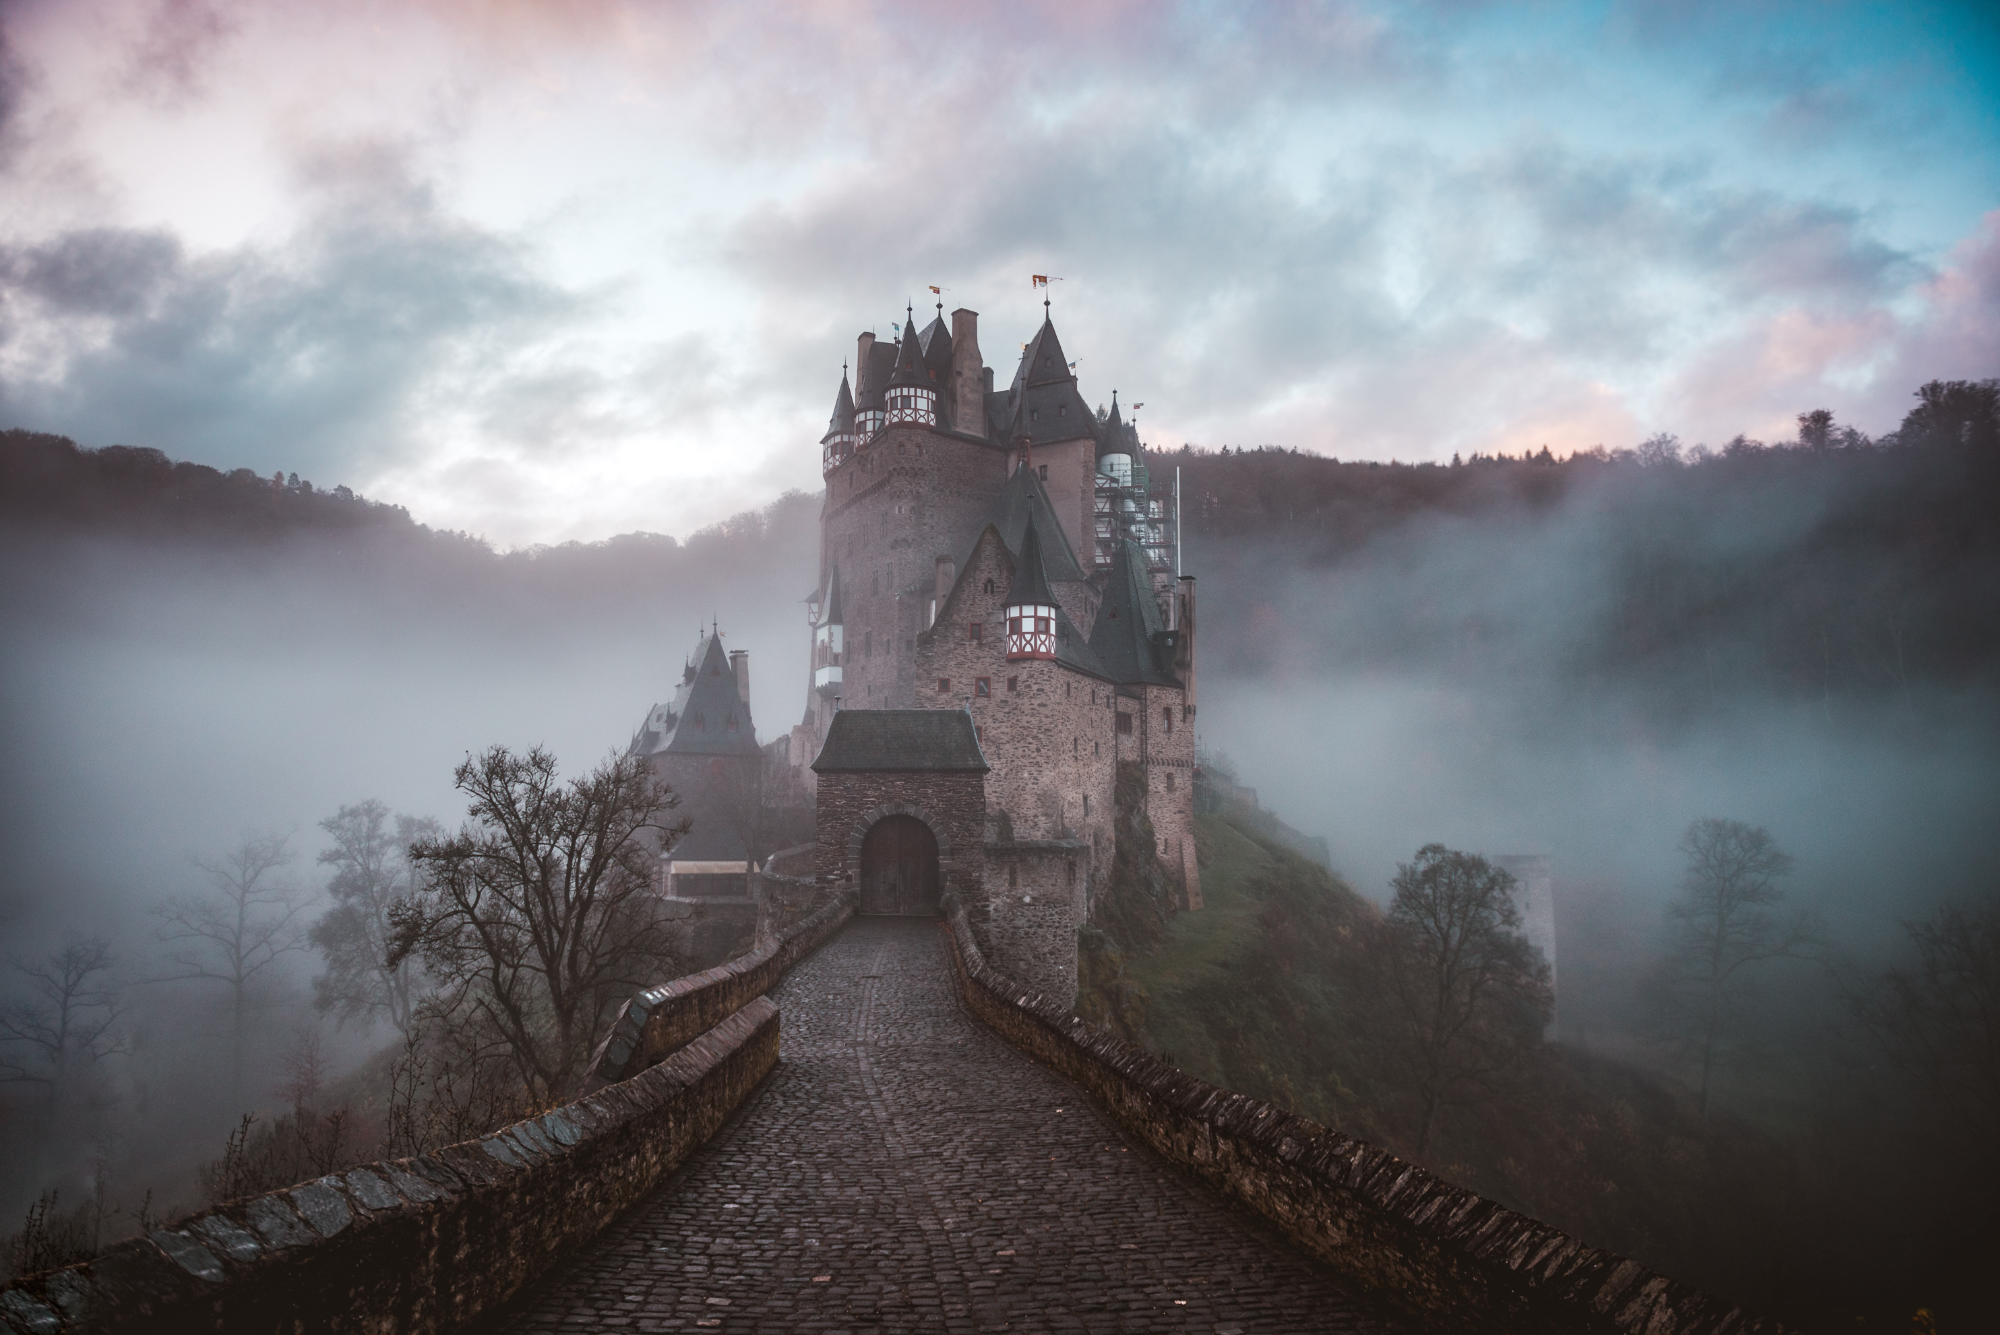 A photo of a castle